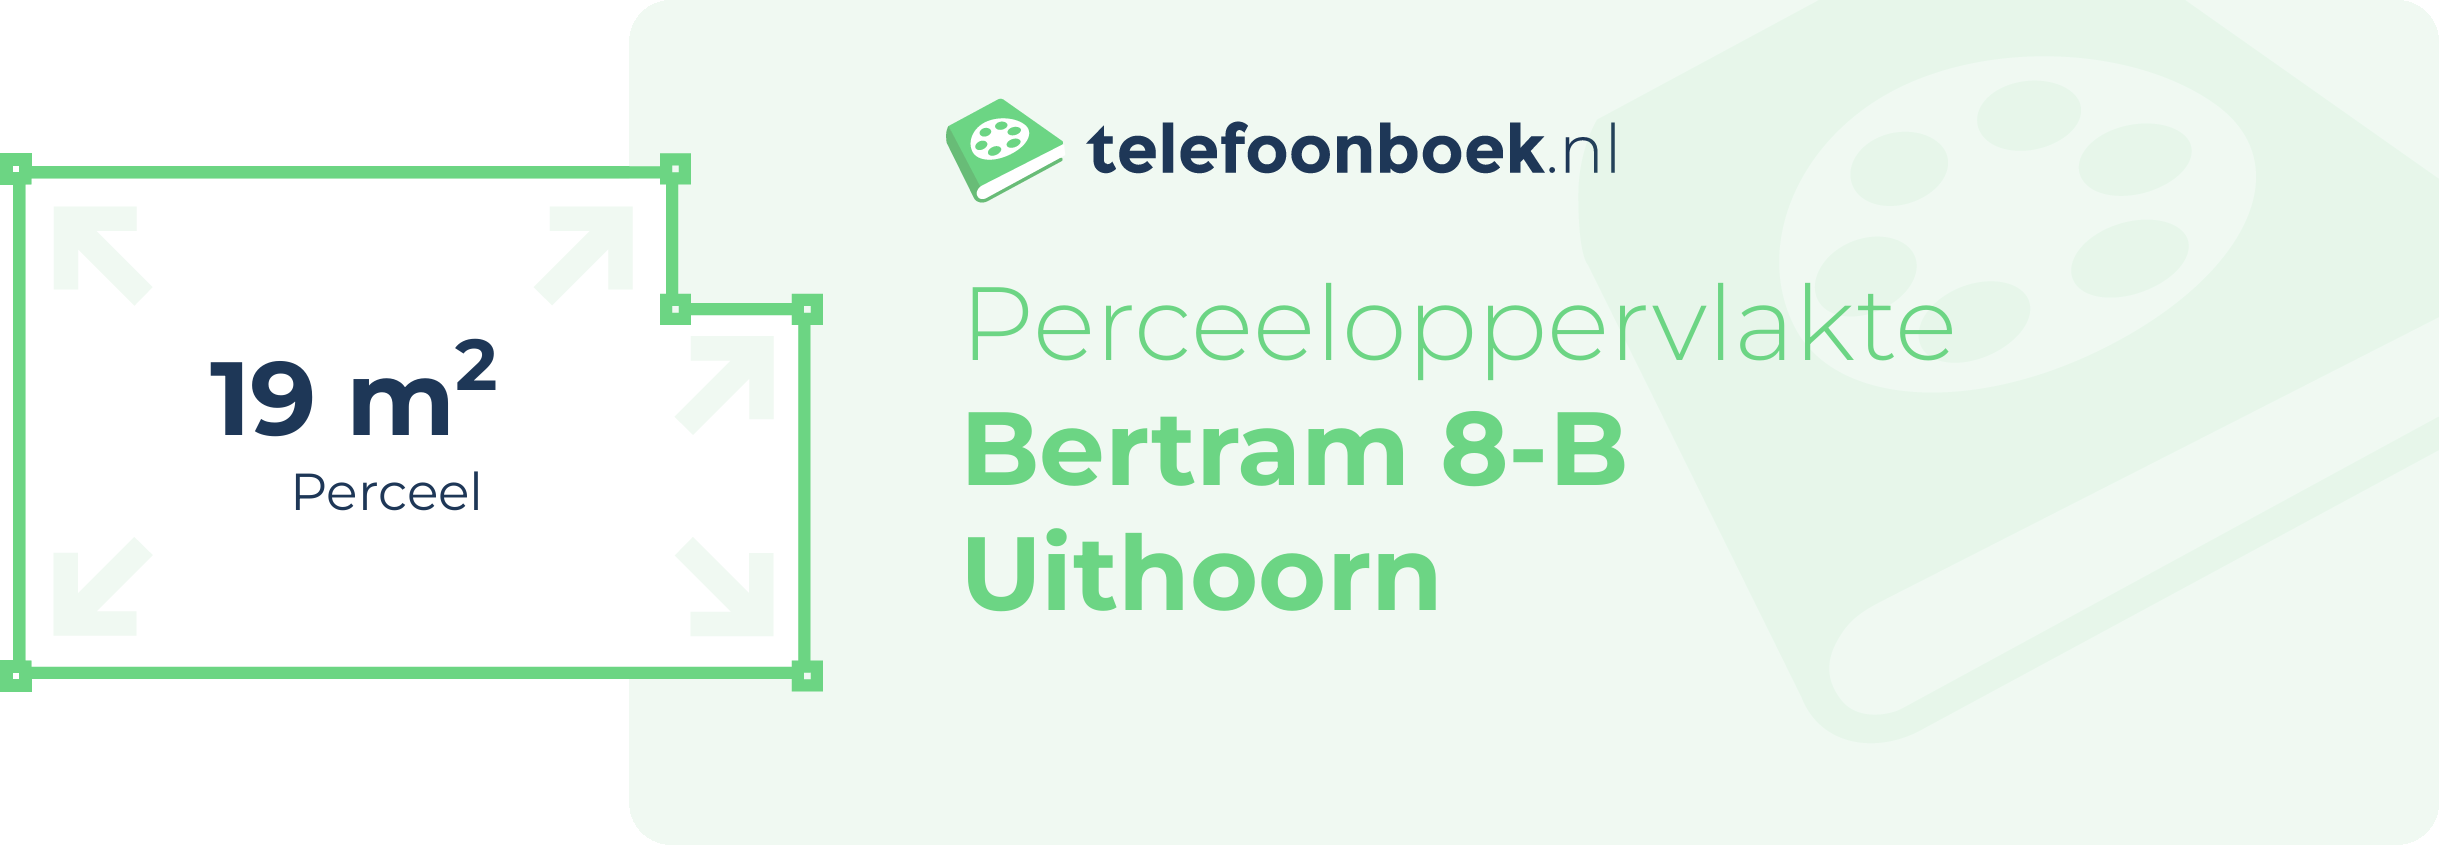 Perceeloppervlakte Bertram 8-B Uithoorn